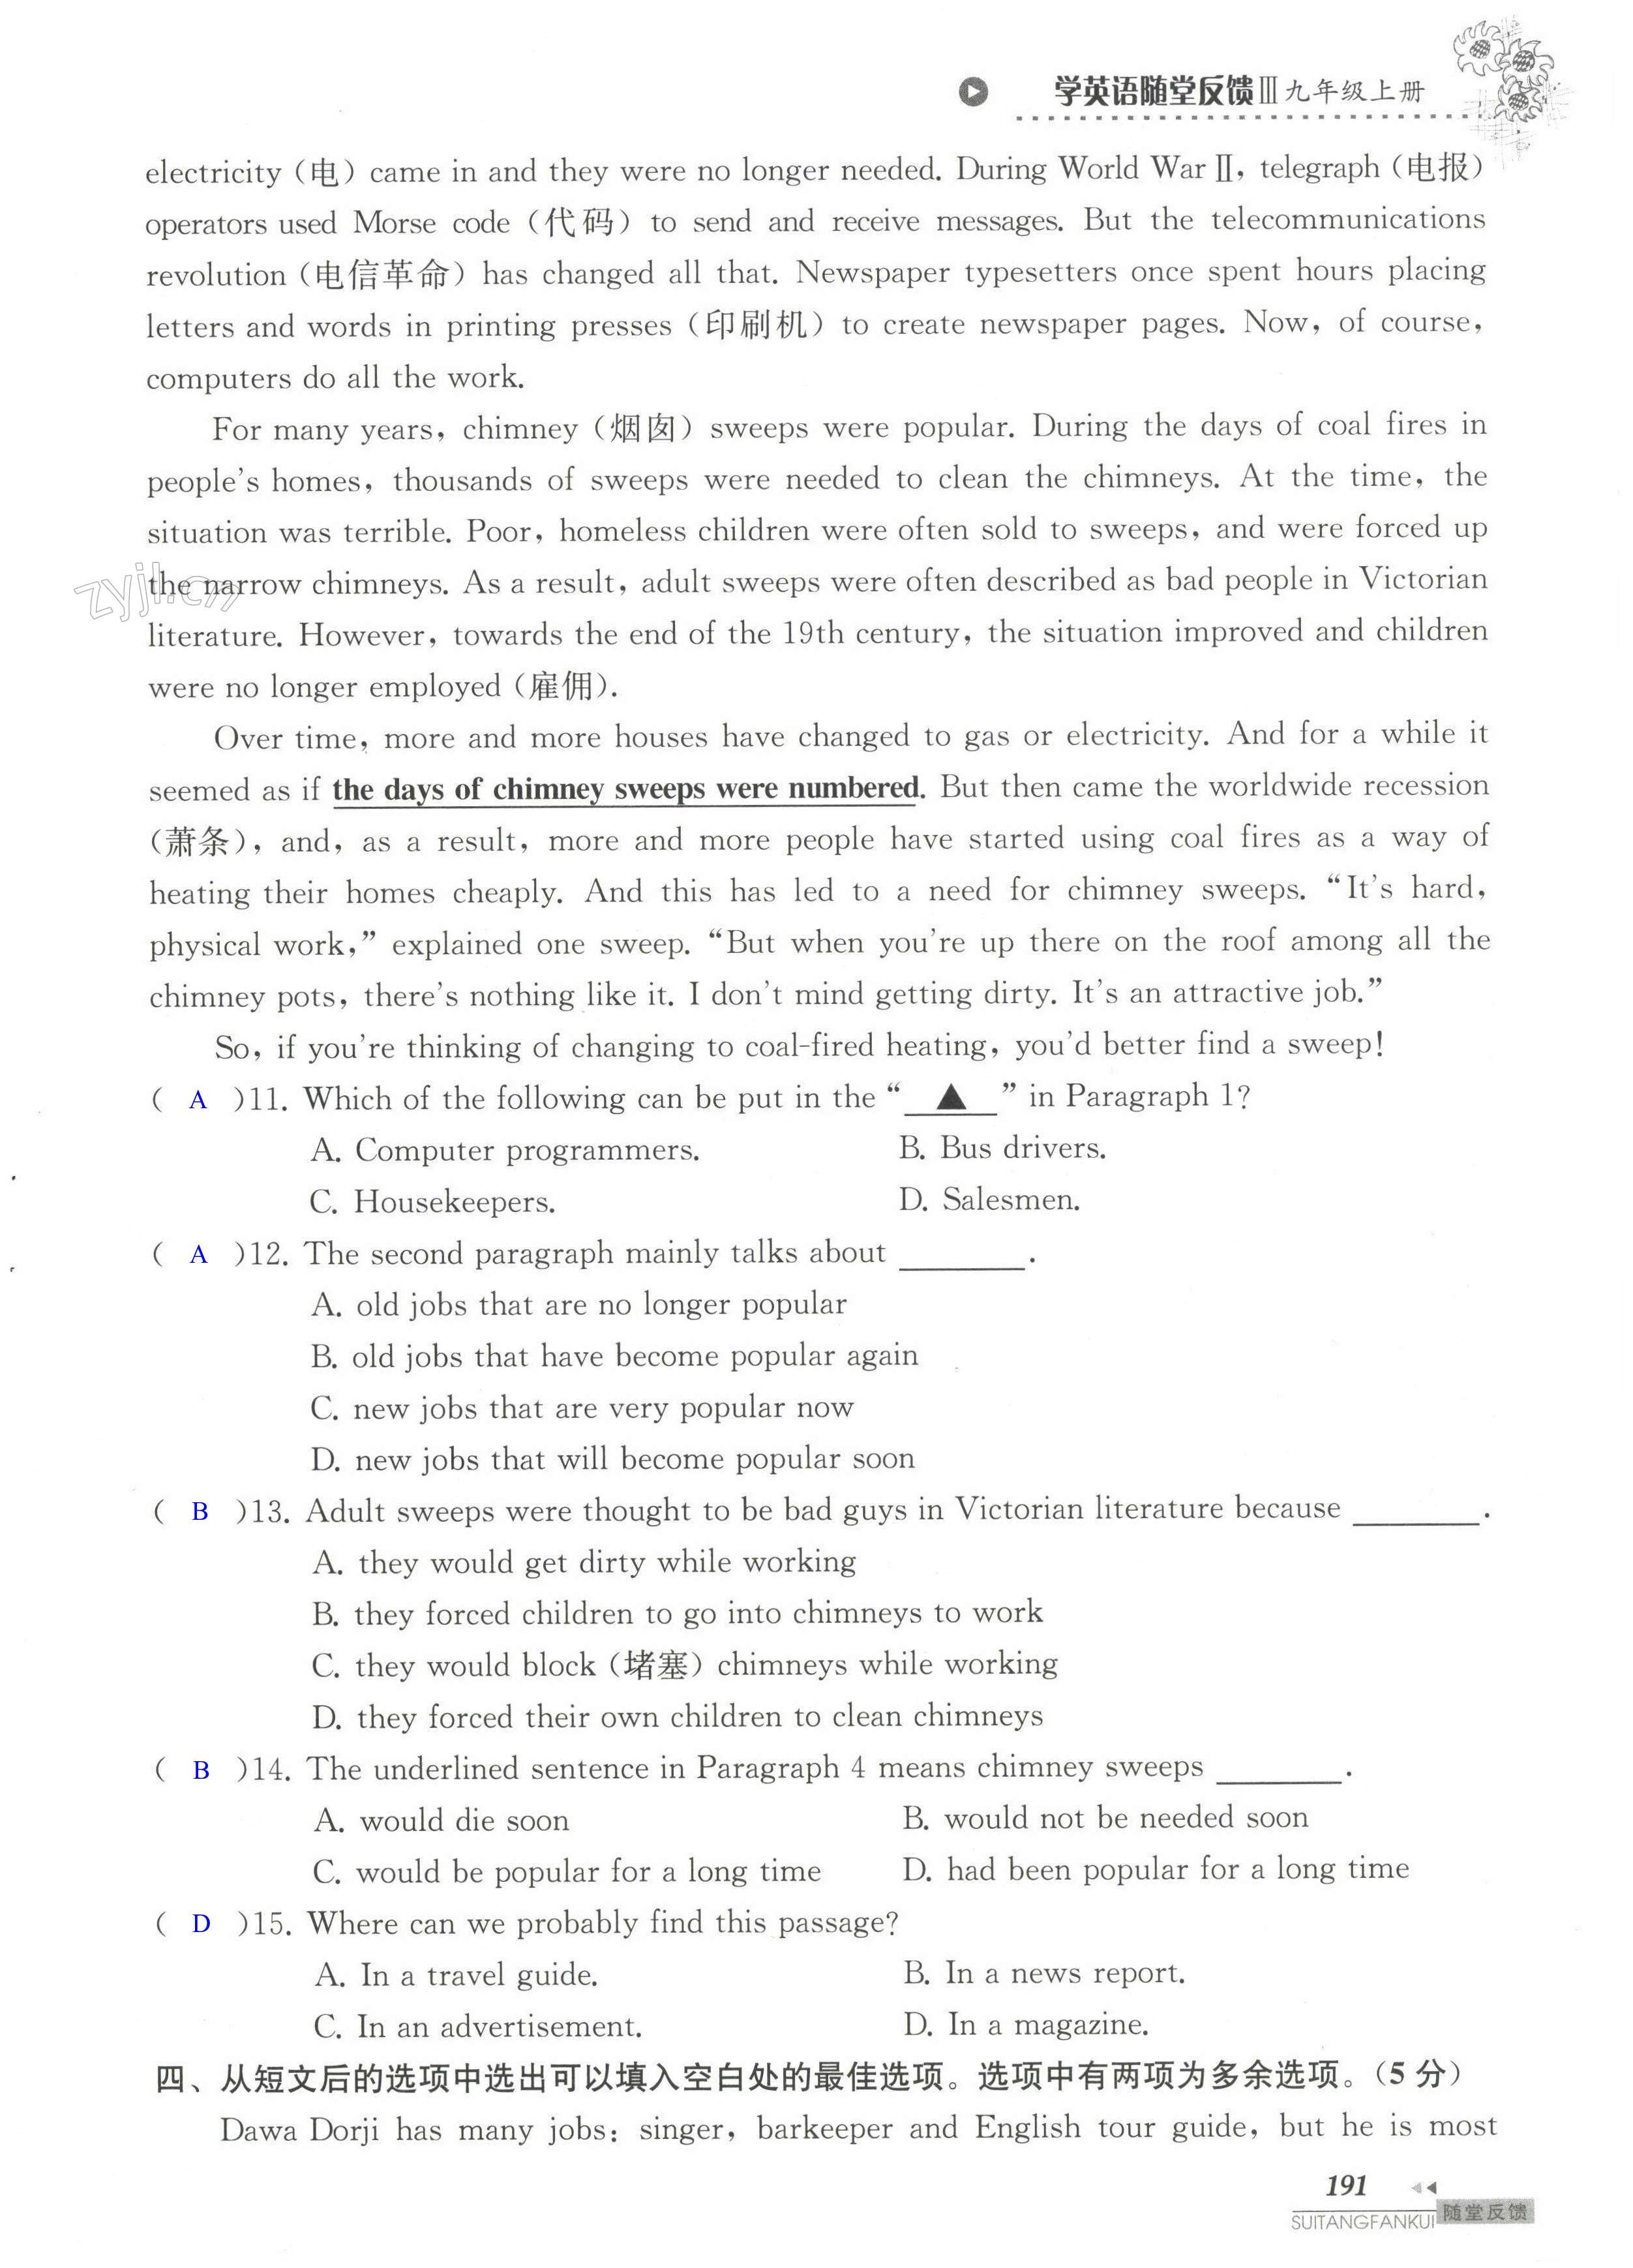 单元综合测试卷 Test for Unit 5 of 9A - 第191页